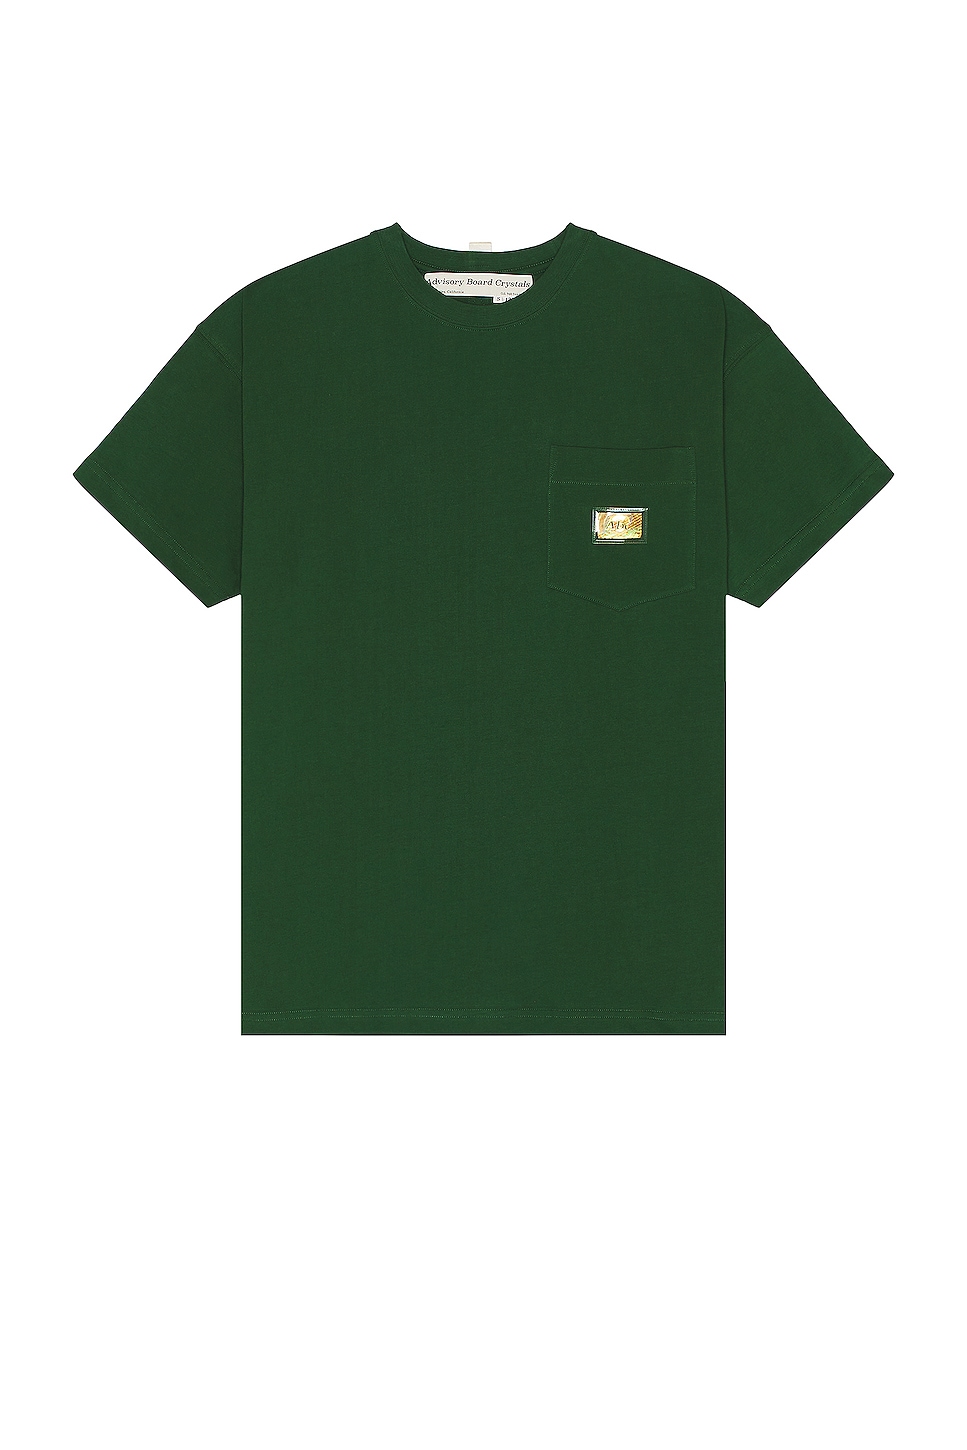 Pocket T-shirt in Dark Green